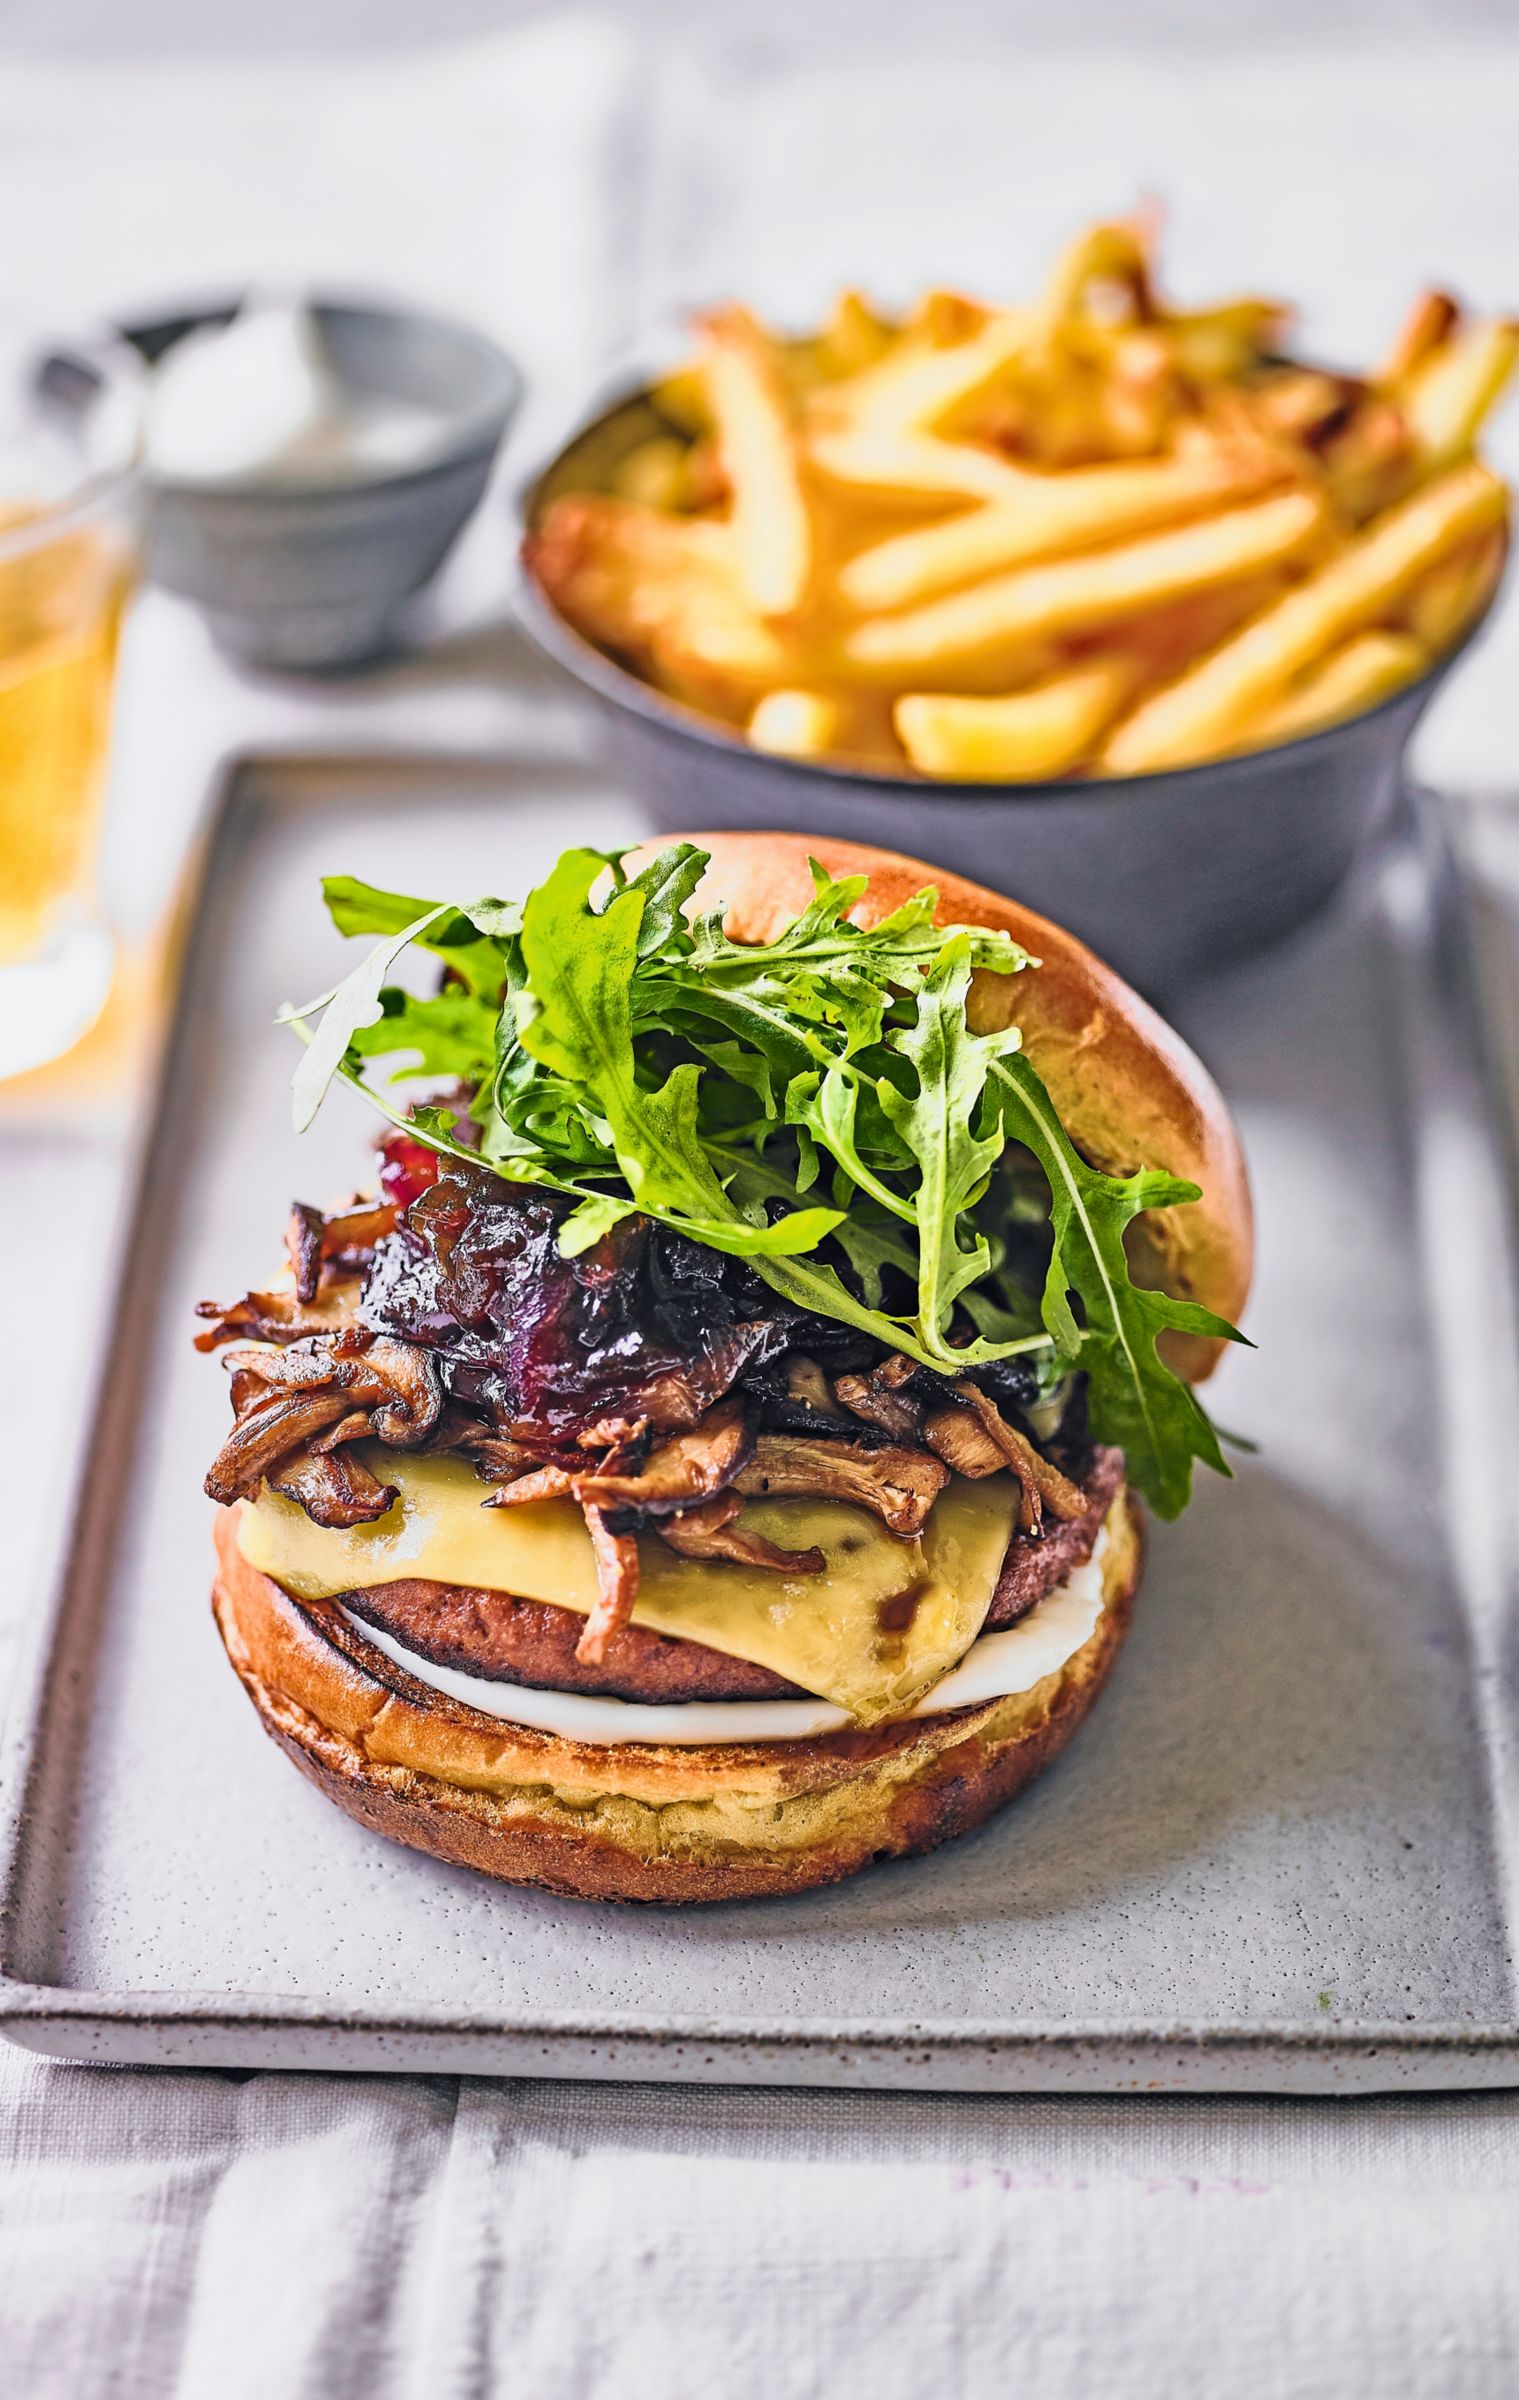 Caramelised onion, mushroom & cheese-loaded vegan burger